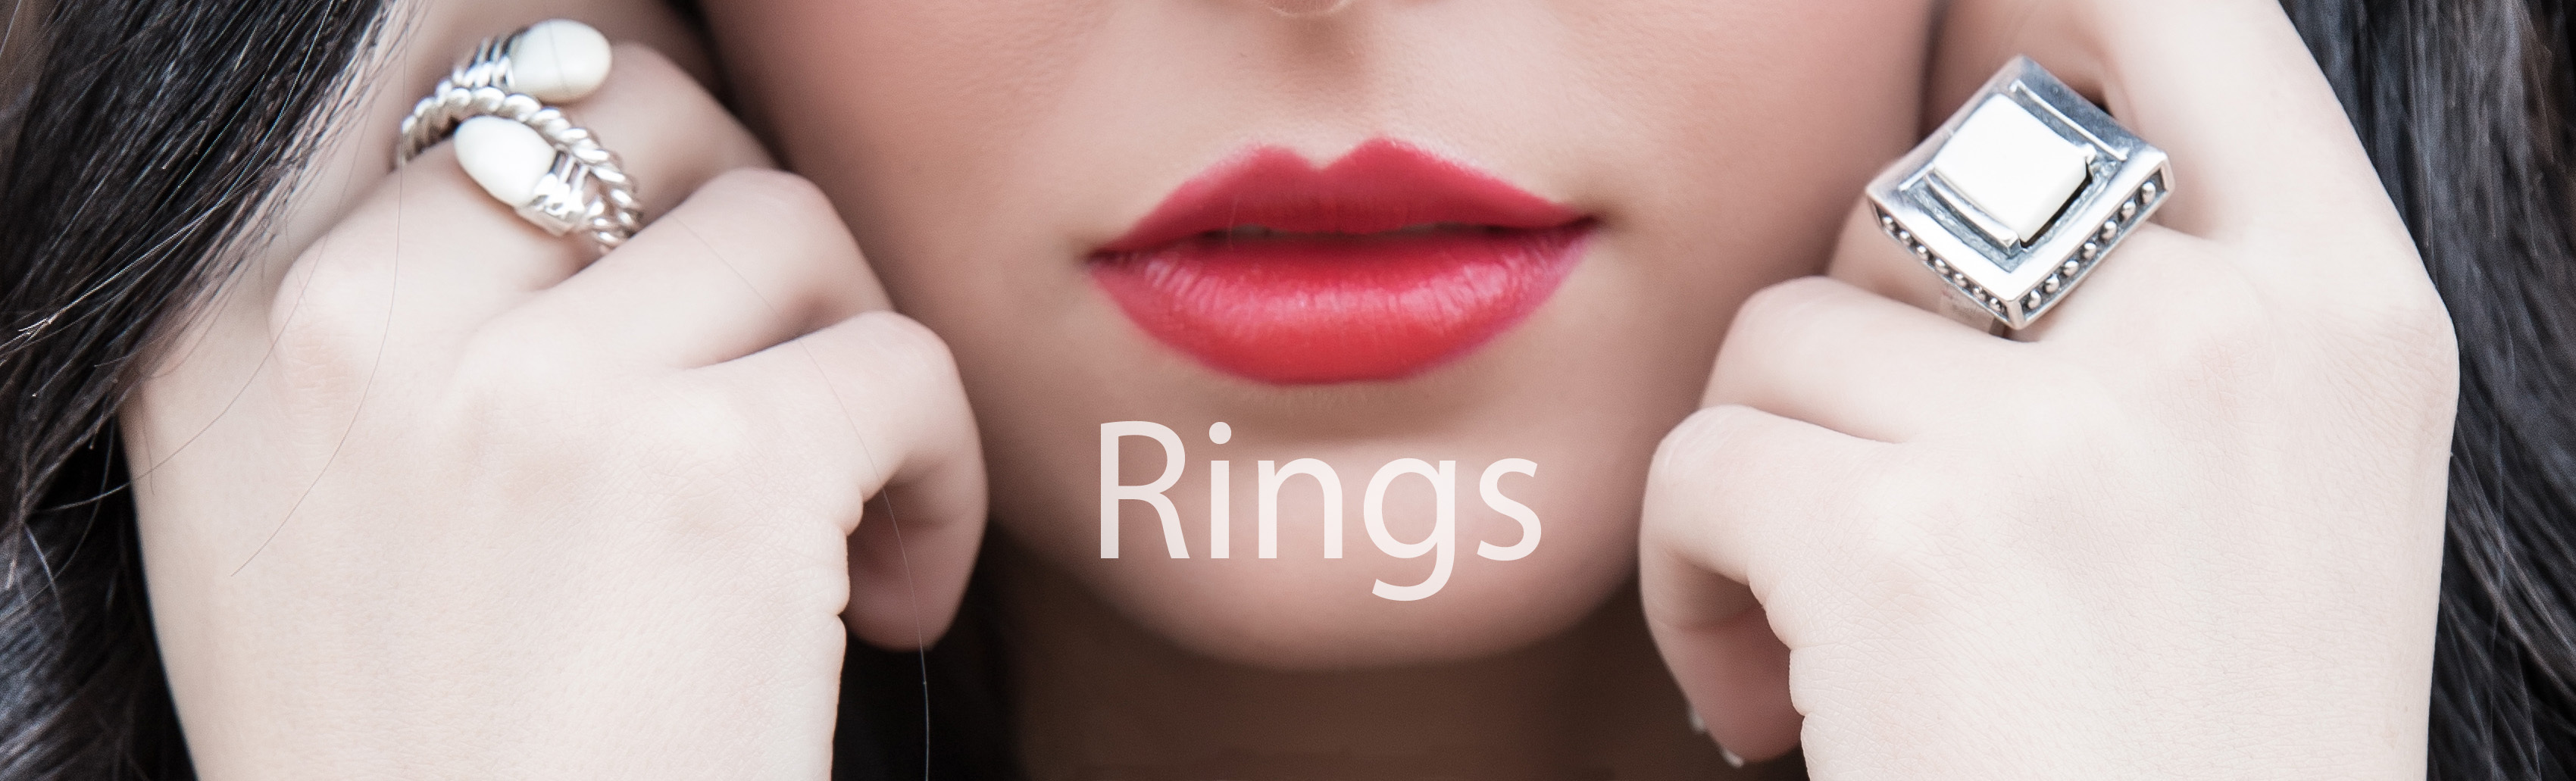 rings_pearls_ivory